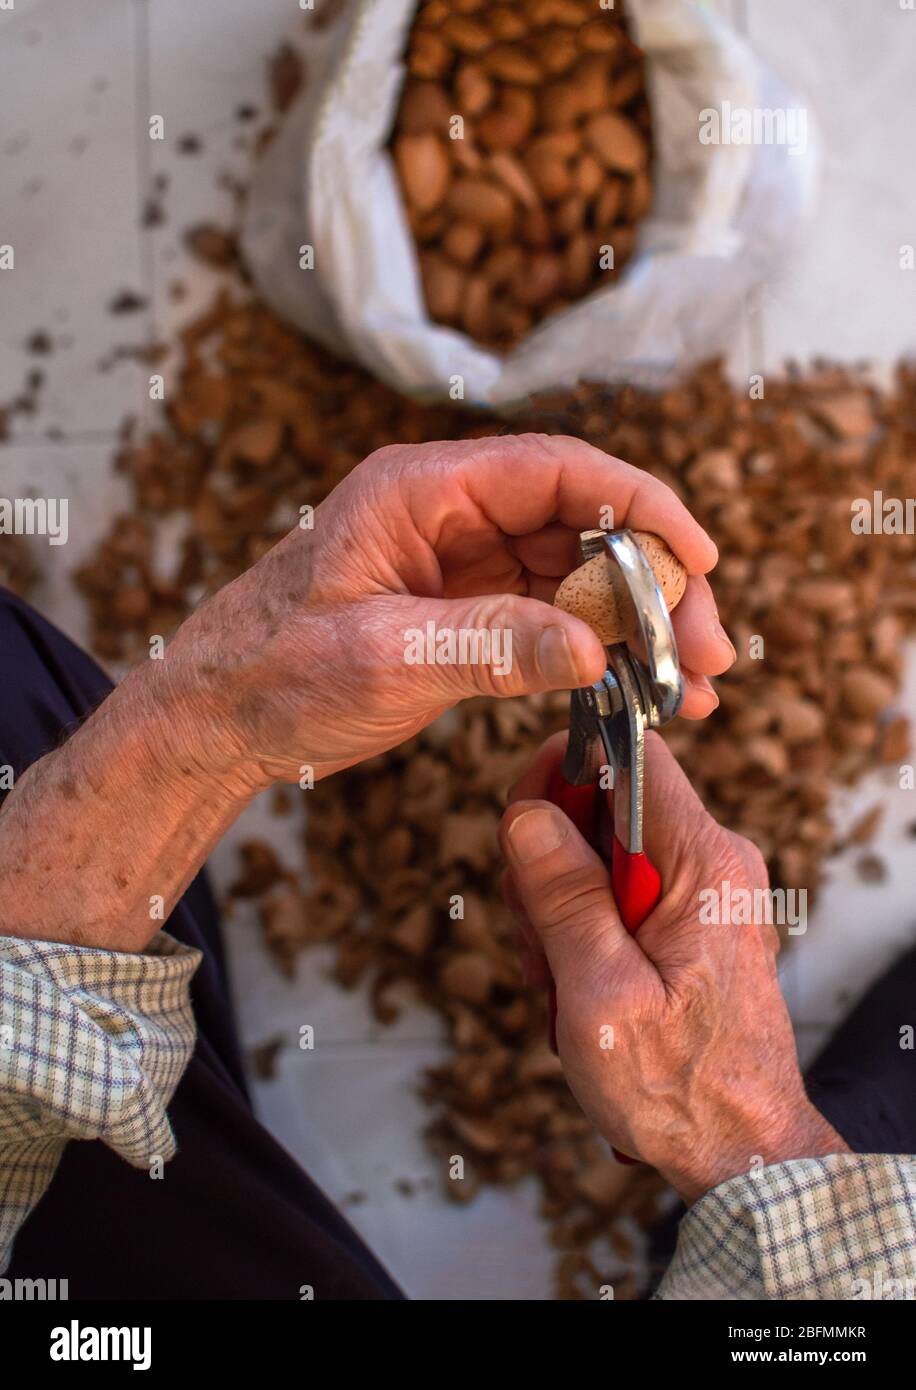 Draufsicht auf die Hände eines alten Mannes, der Mandeln schälte. Verschwimmen Hintergrund mit Muscheln und Beutel voller Mandeln. Stockfoto